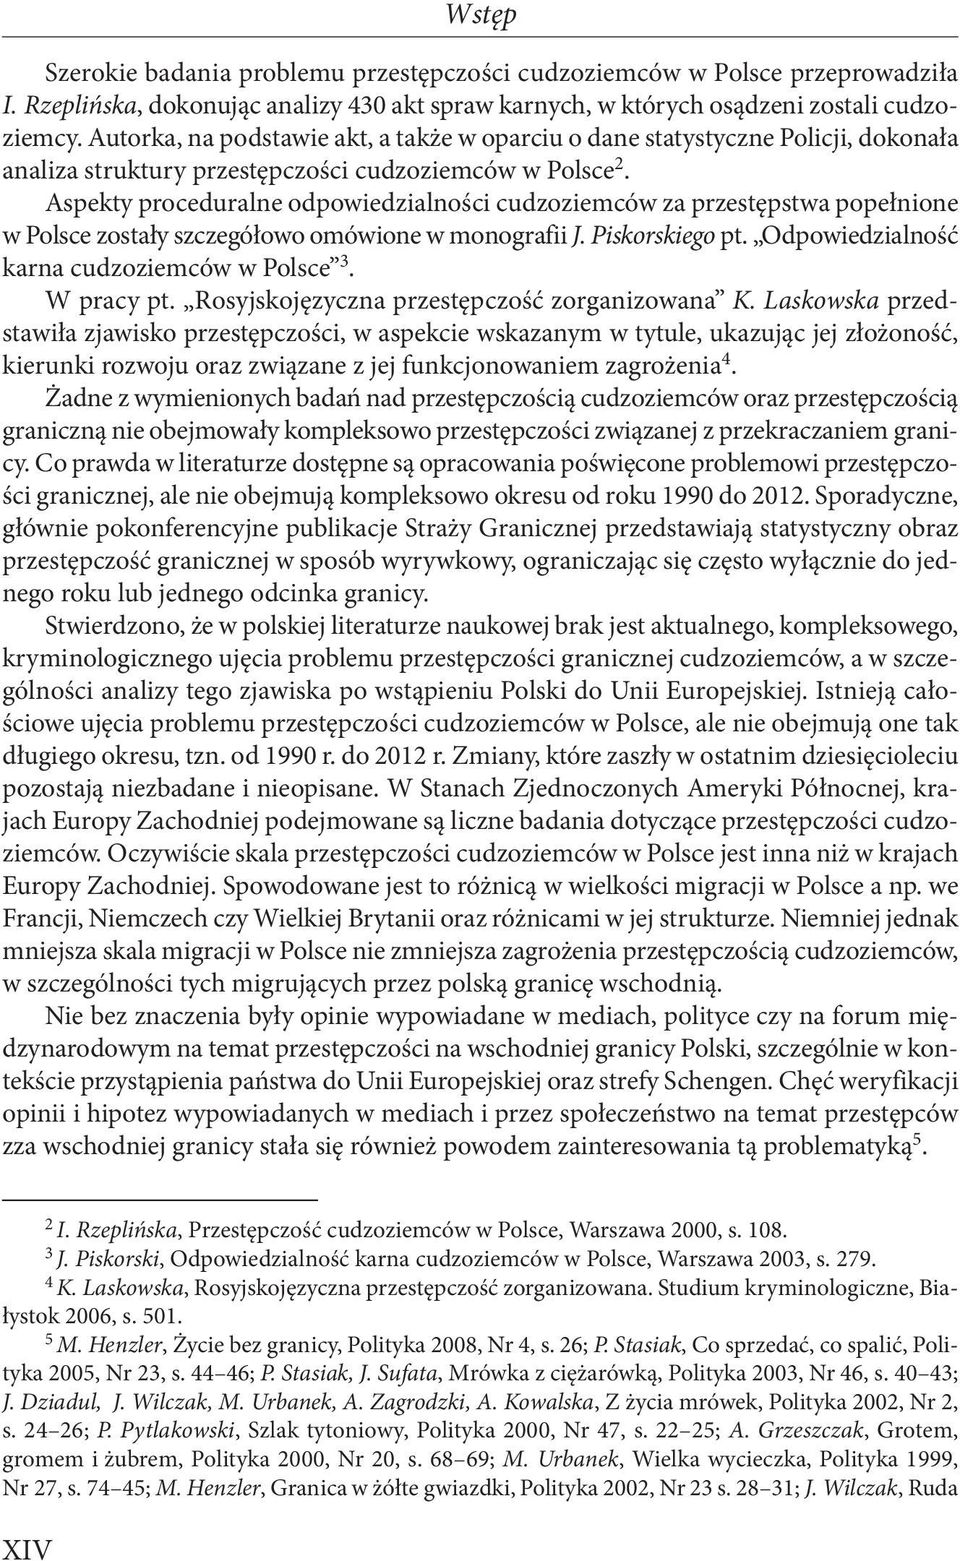 Aspekty proceduralne odpowiedzialności cudzoziemców za przestępstwa popełnione w Polsce zostały szczegółowo omówione w monografii J. Piskorskiego pt. Odpowiedzialność karna cudzoziemców w Polsce 3.